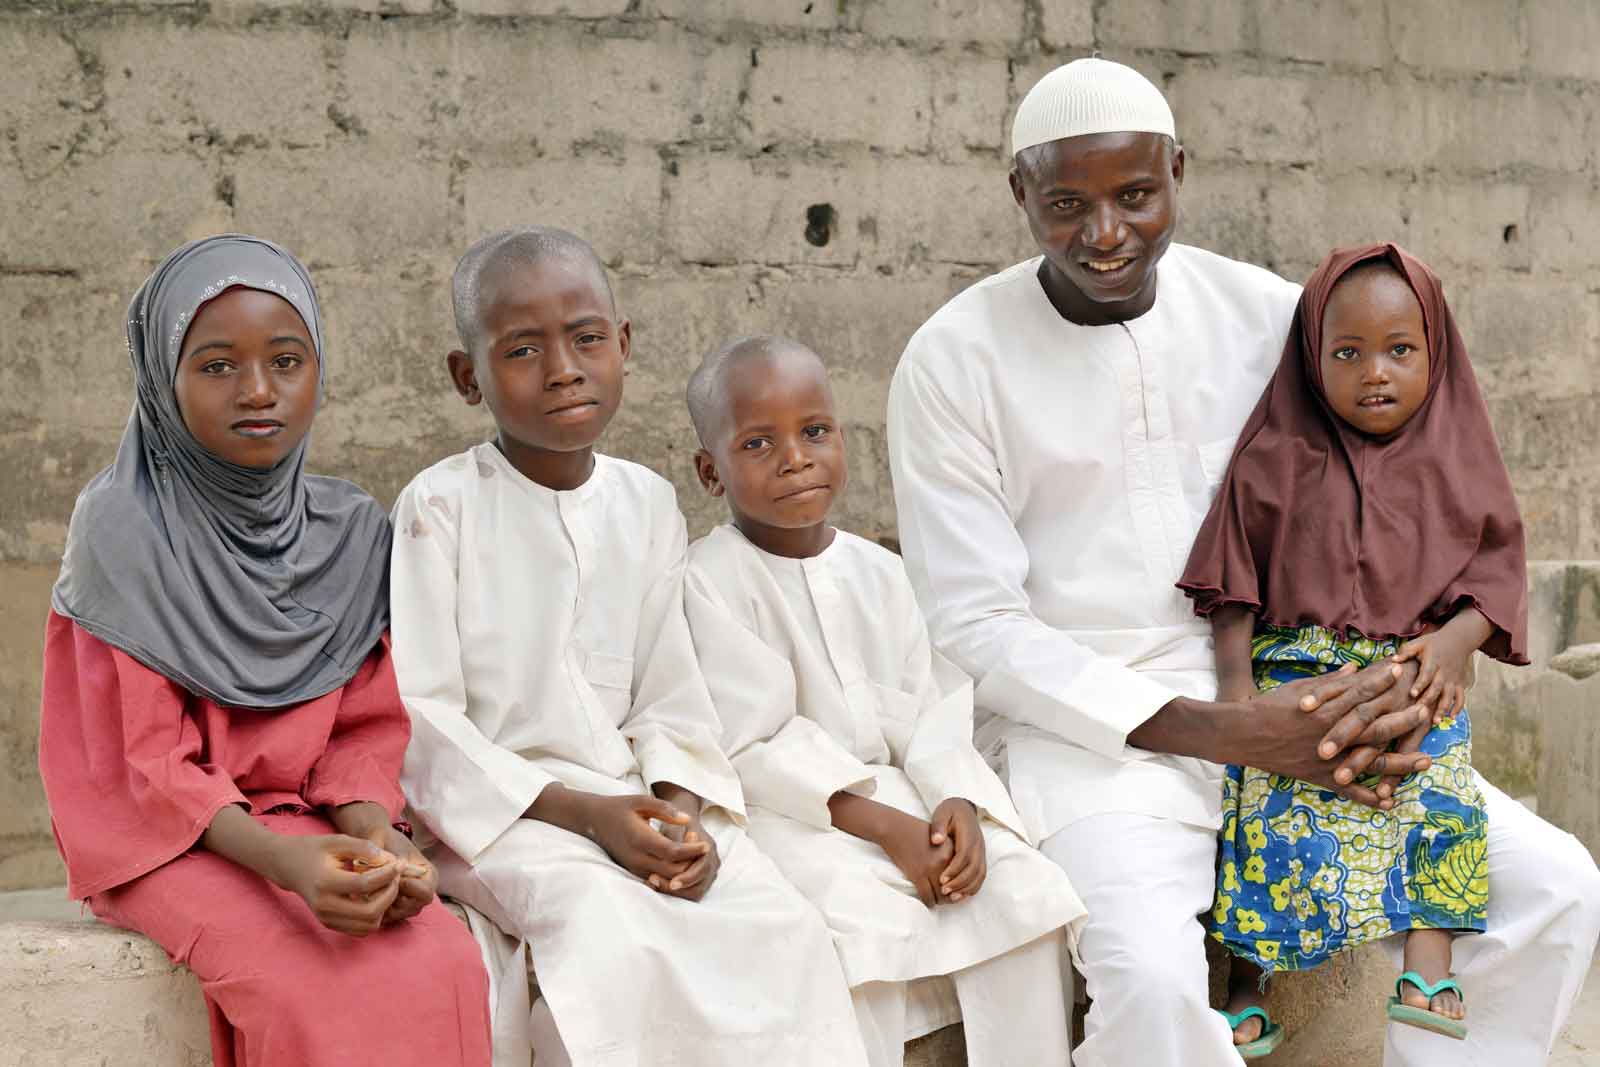   Yusuf Ibrahim, père de quatre enfants et résidant dans l’État de Niger, est désormais un défenseur local de la vaccination. Il avait appris que les vaccins étaient dangereux quand il était enfant. Il a remis en cause ses croyances, il y a dix ans, lorsque sa fille Saratu, maintenant âgée de 13 ans (tout à gauche), a failli mourir d’une pneumonie.